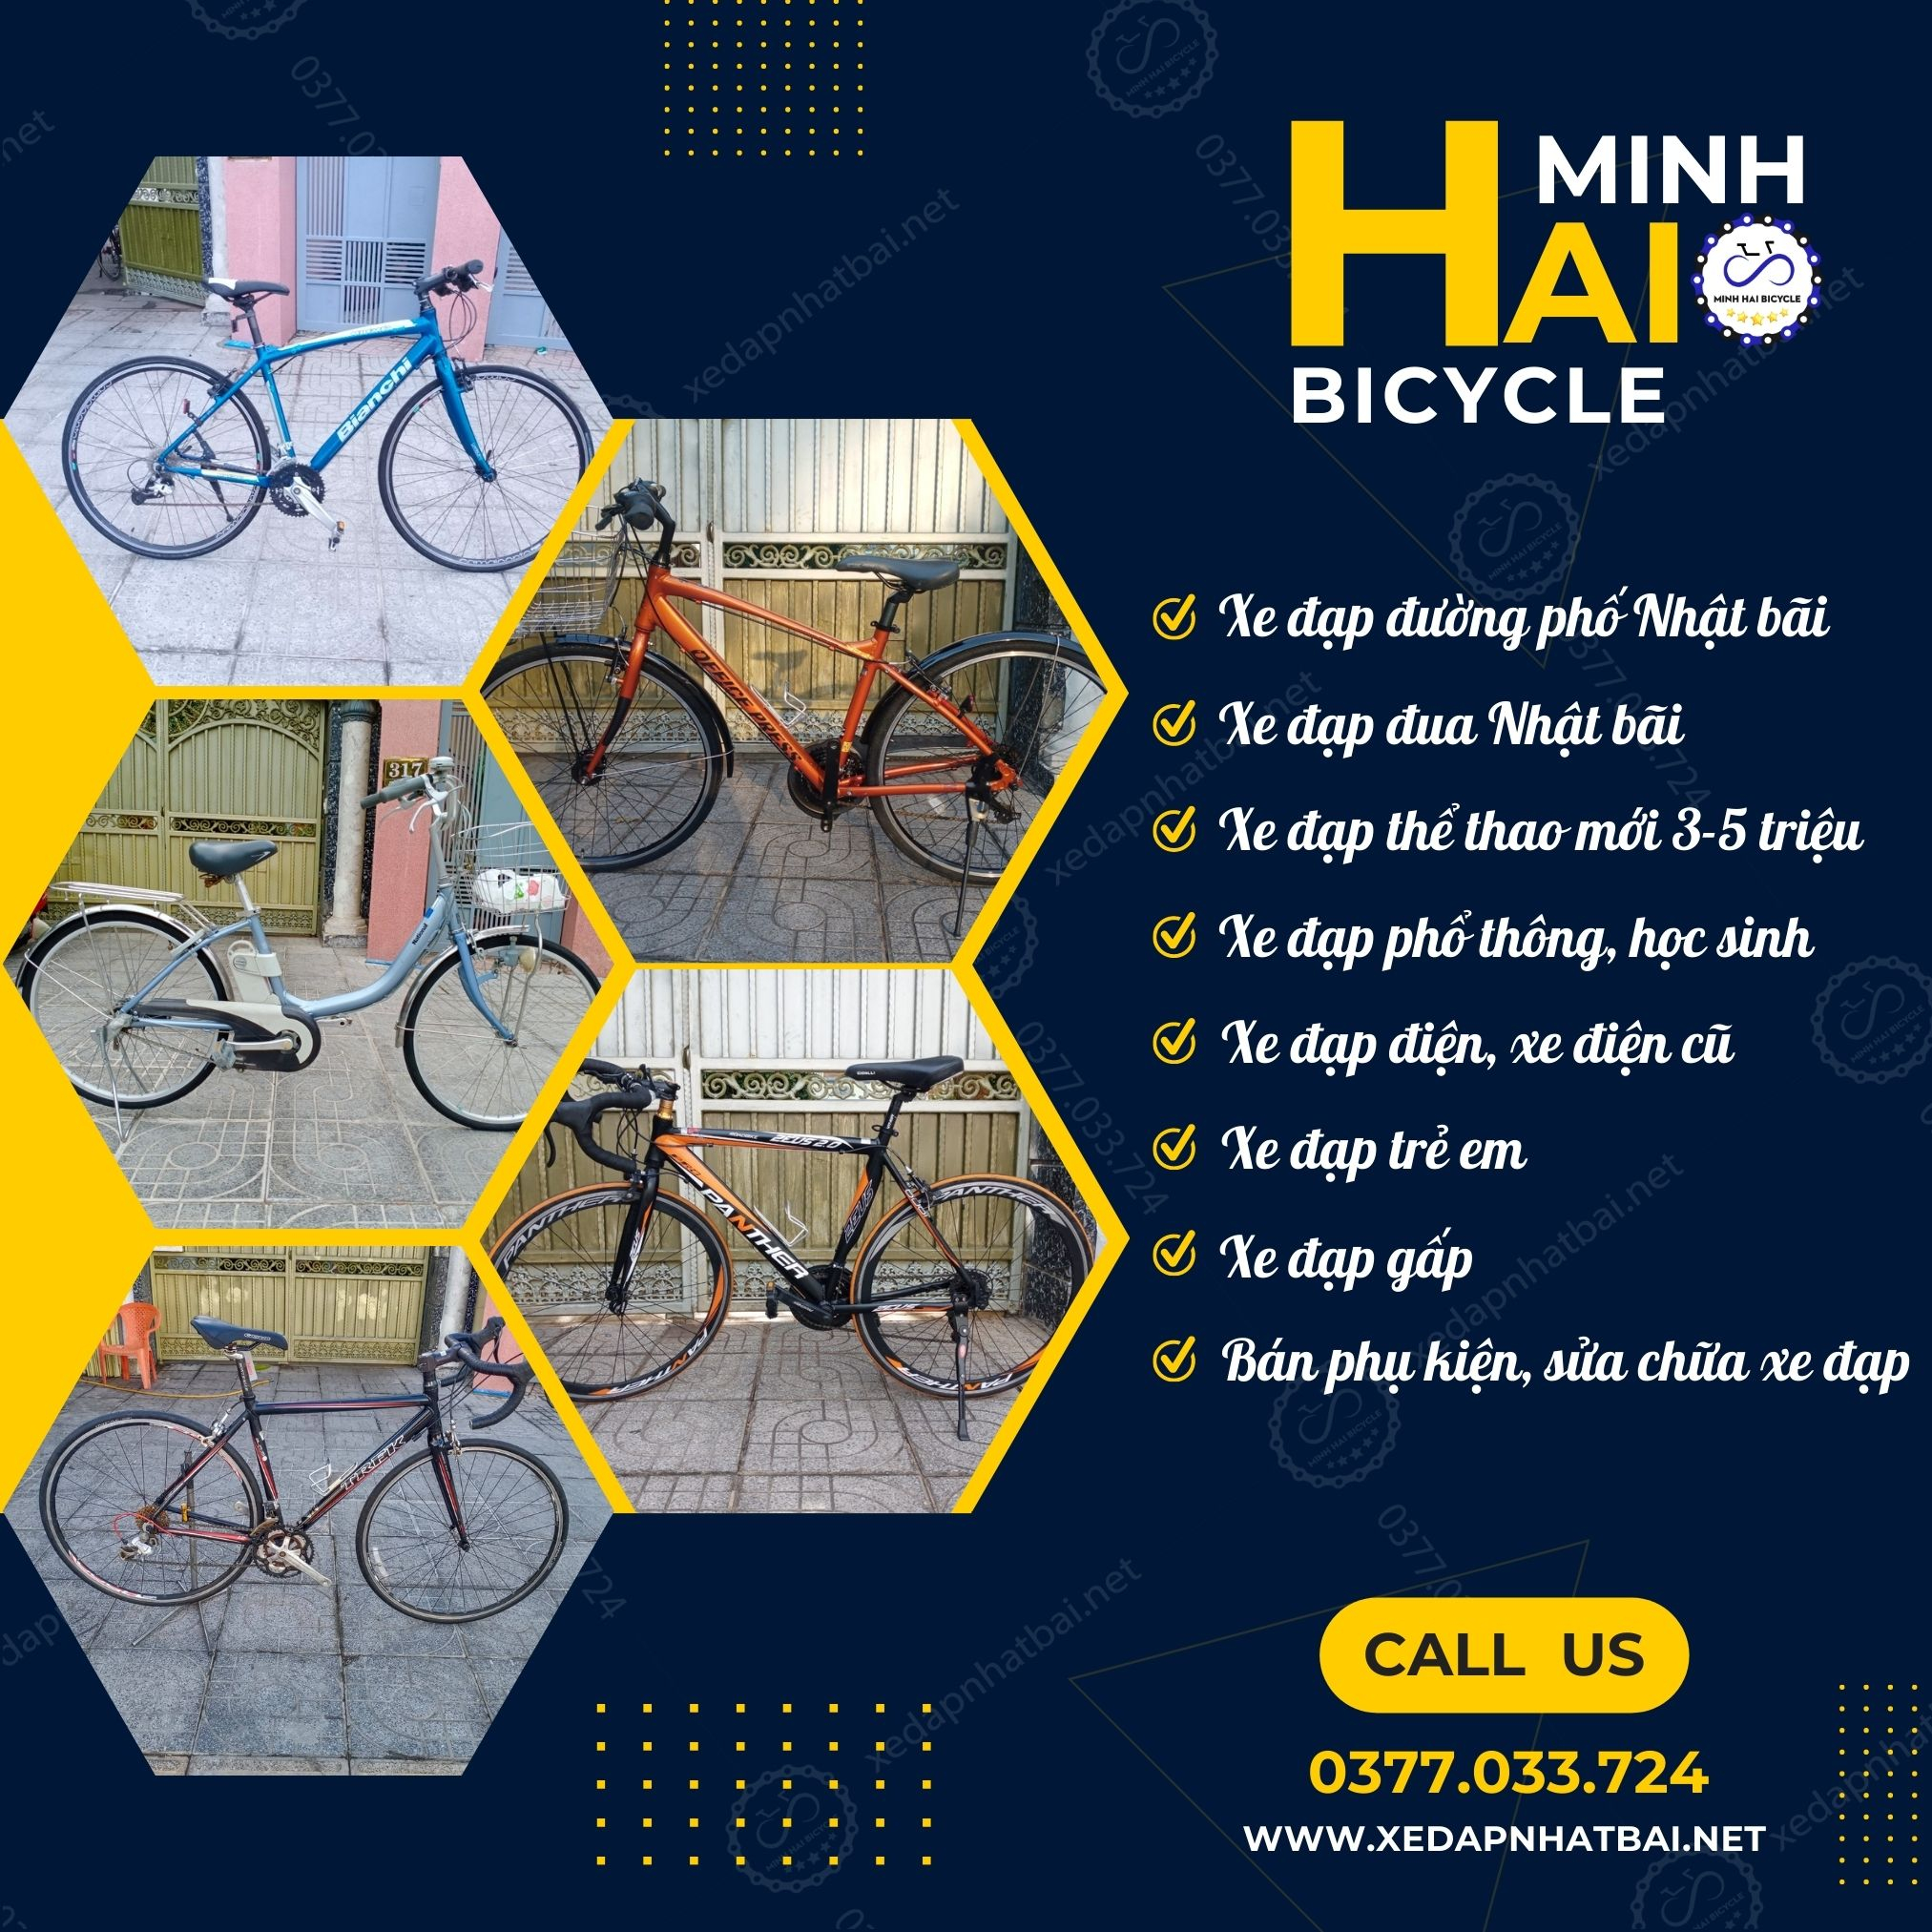 Nếu bạn đang phân vân nên mua xe đạp thể thao dành cho nữ ở địa điểm nào thì Xe Đạp Nhật Bãi Minh Hải là một trong những cửa hàng uy tín tại Việt Nam mà bạn nên cân nhắc